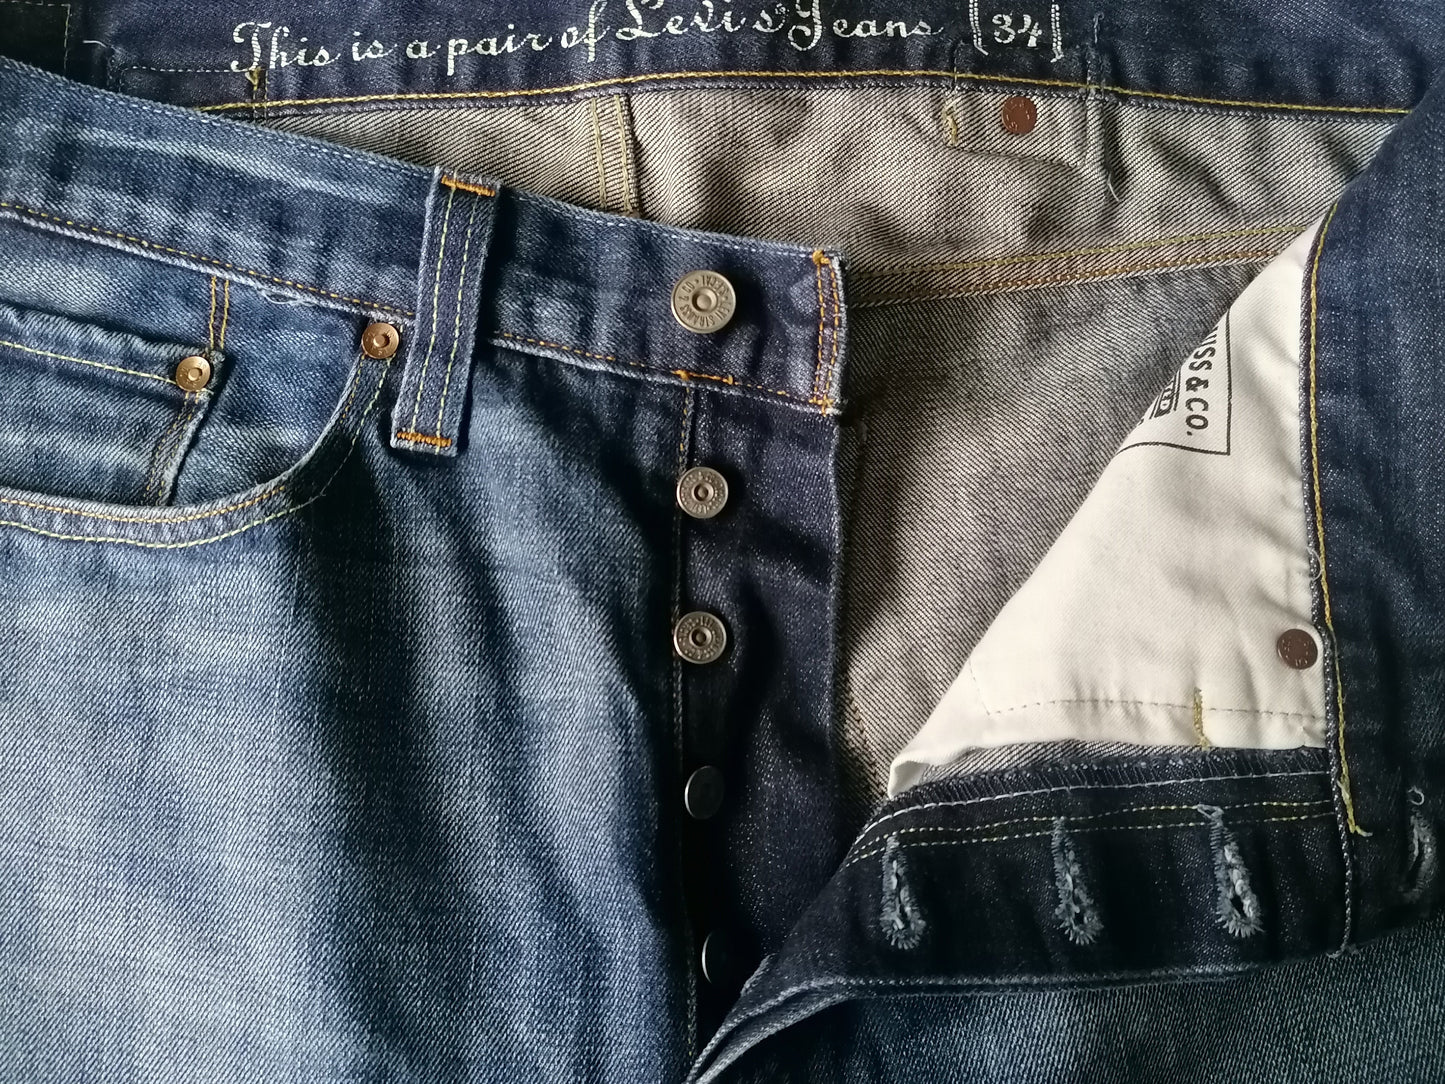 Levi's jeans. Blue colored. W34 - L28.